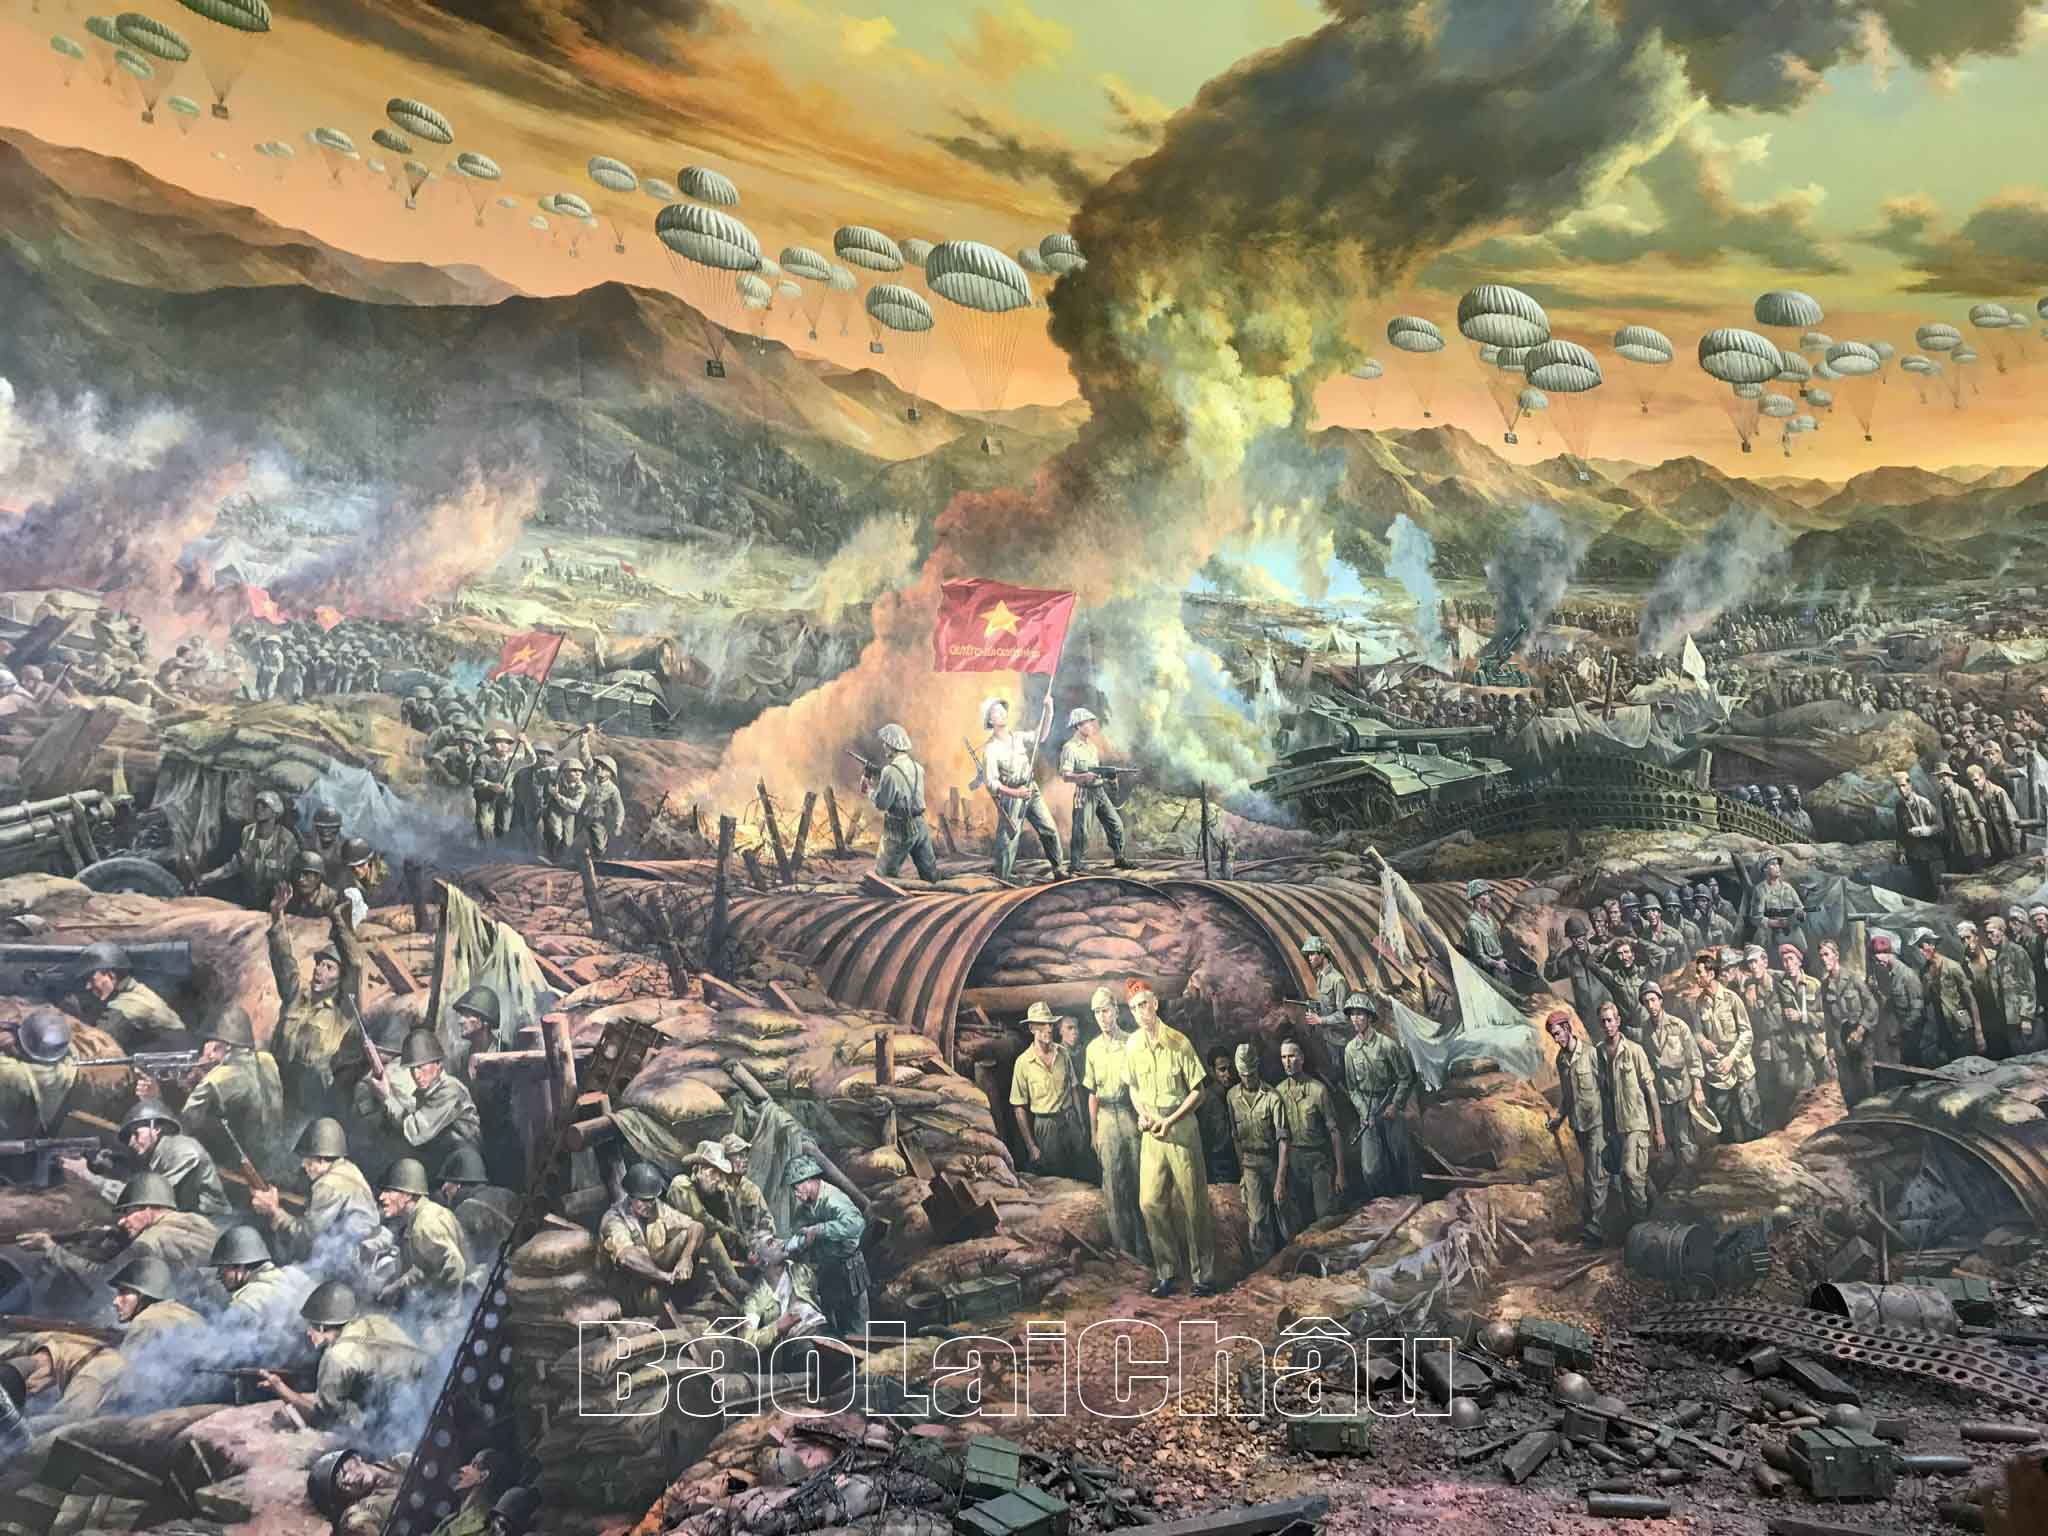 Bức tranh Panorama về Chiến thắng lịch sử Điện Biên Phủ là điểm nhấn tạo sức hút đặc biệt đối với du khách khi đến du lịch Điện Biên.